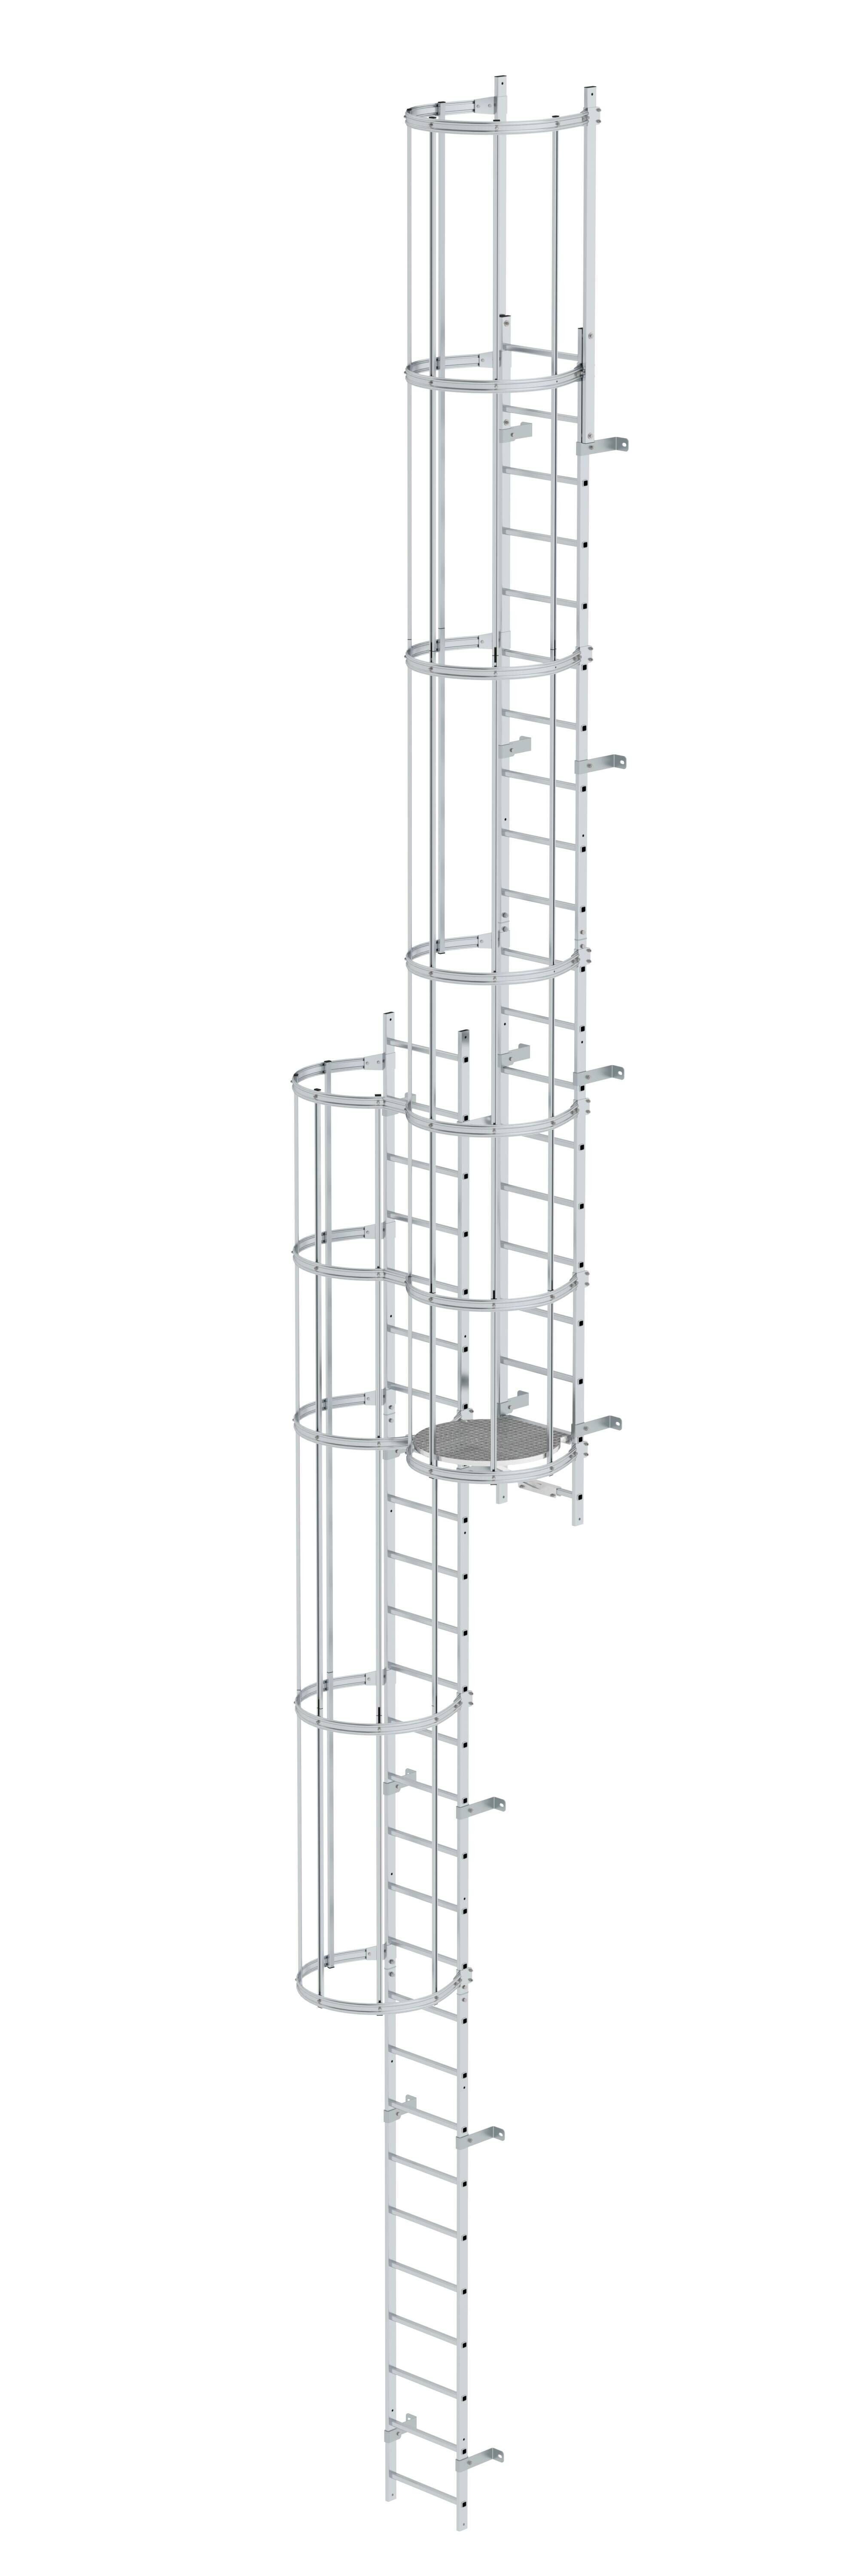 Mehrzügige Steigleiter mit Rückenschutz (Notleiter) Aluminium blank 12,12m